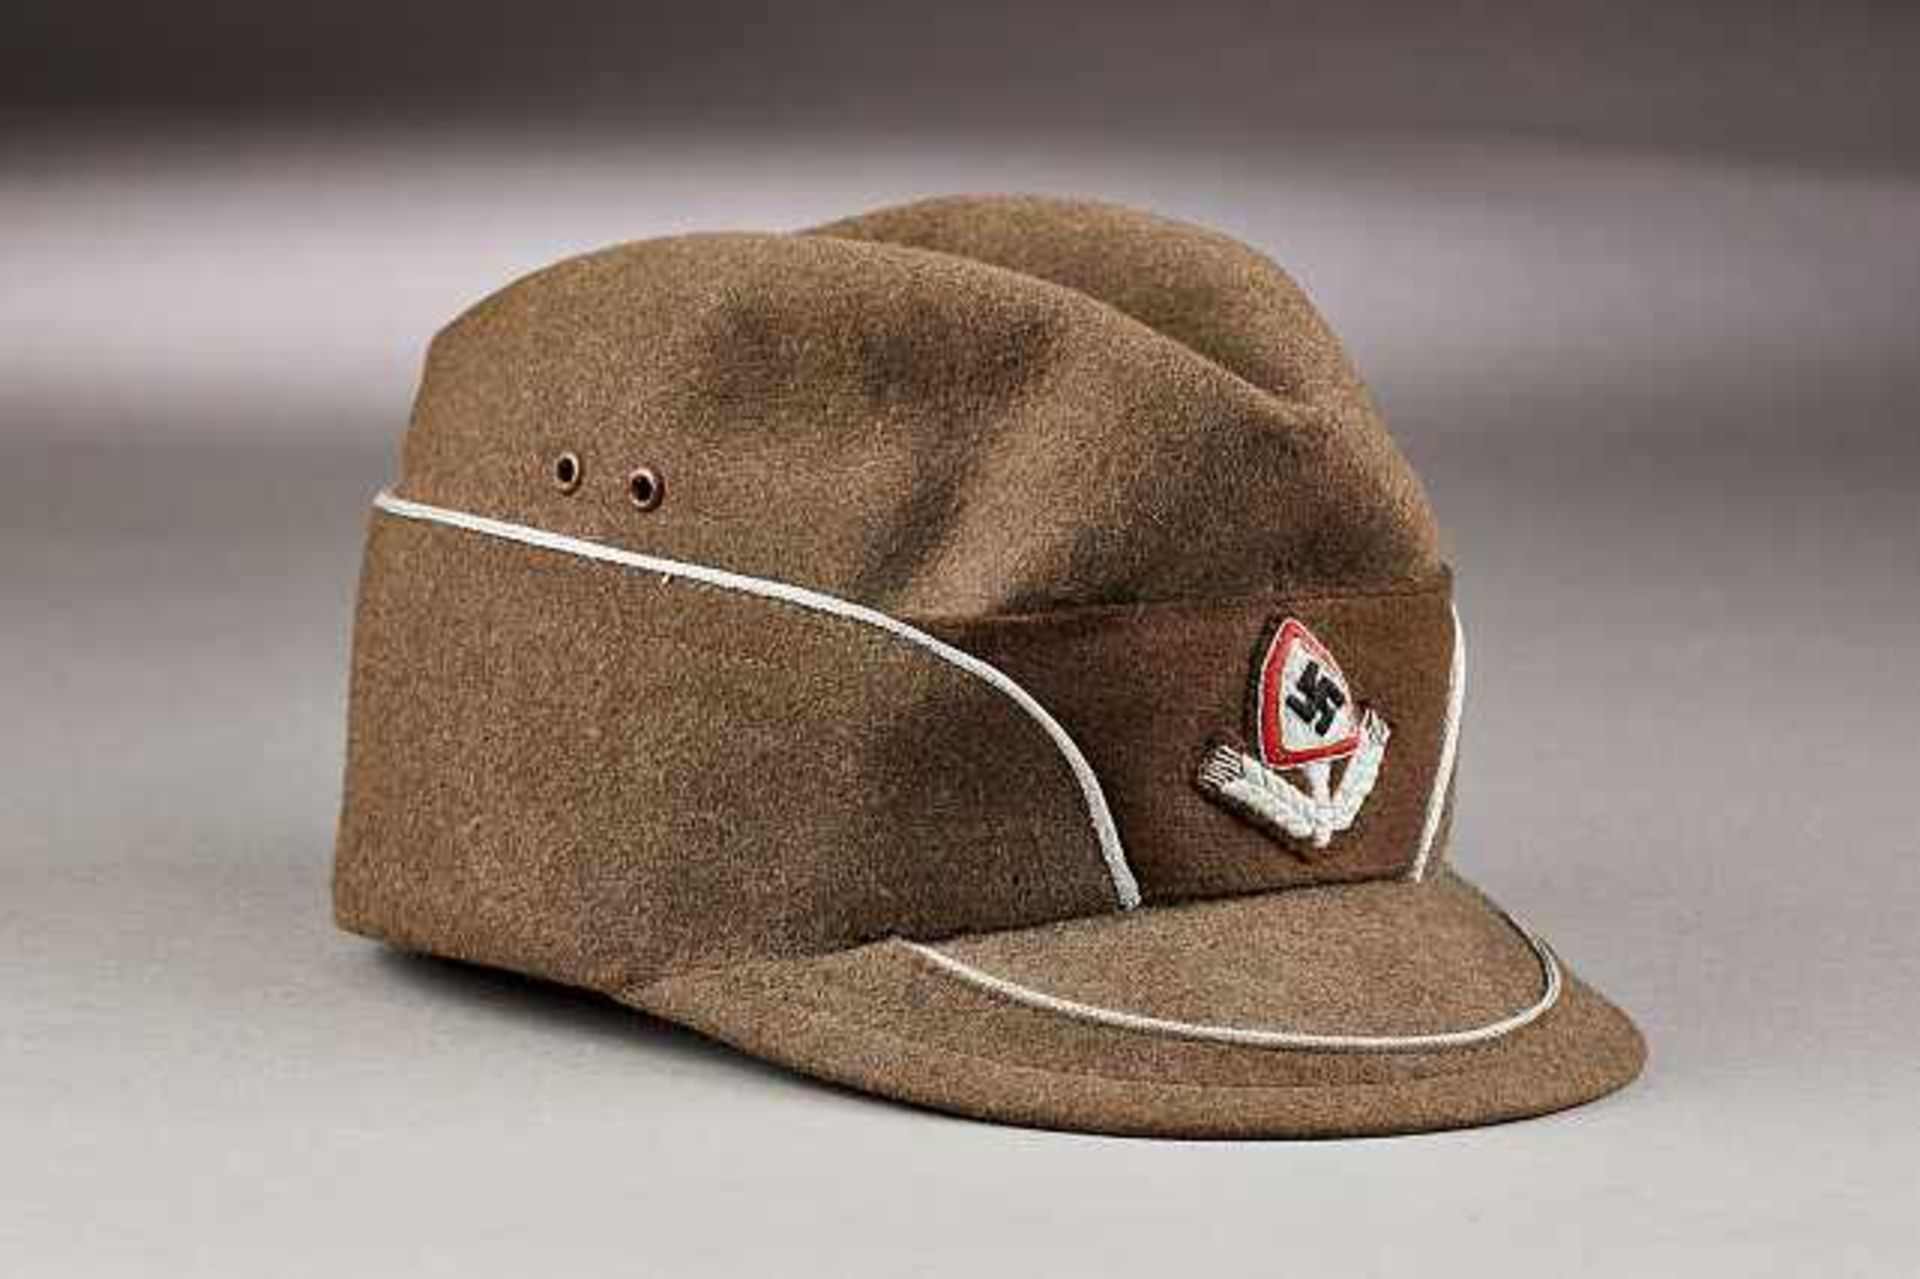 Deutsches Reich 1933 - 1945 - Reichsarbeitsdienst-RAD : RAD Leader's Service Cap.Interior of cap